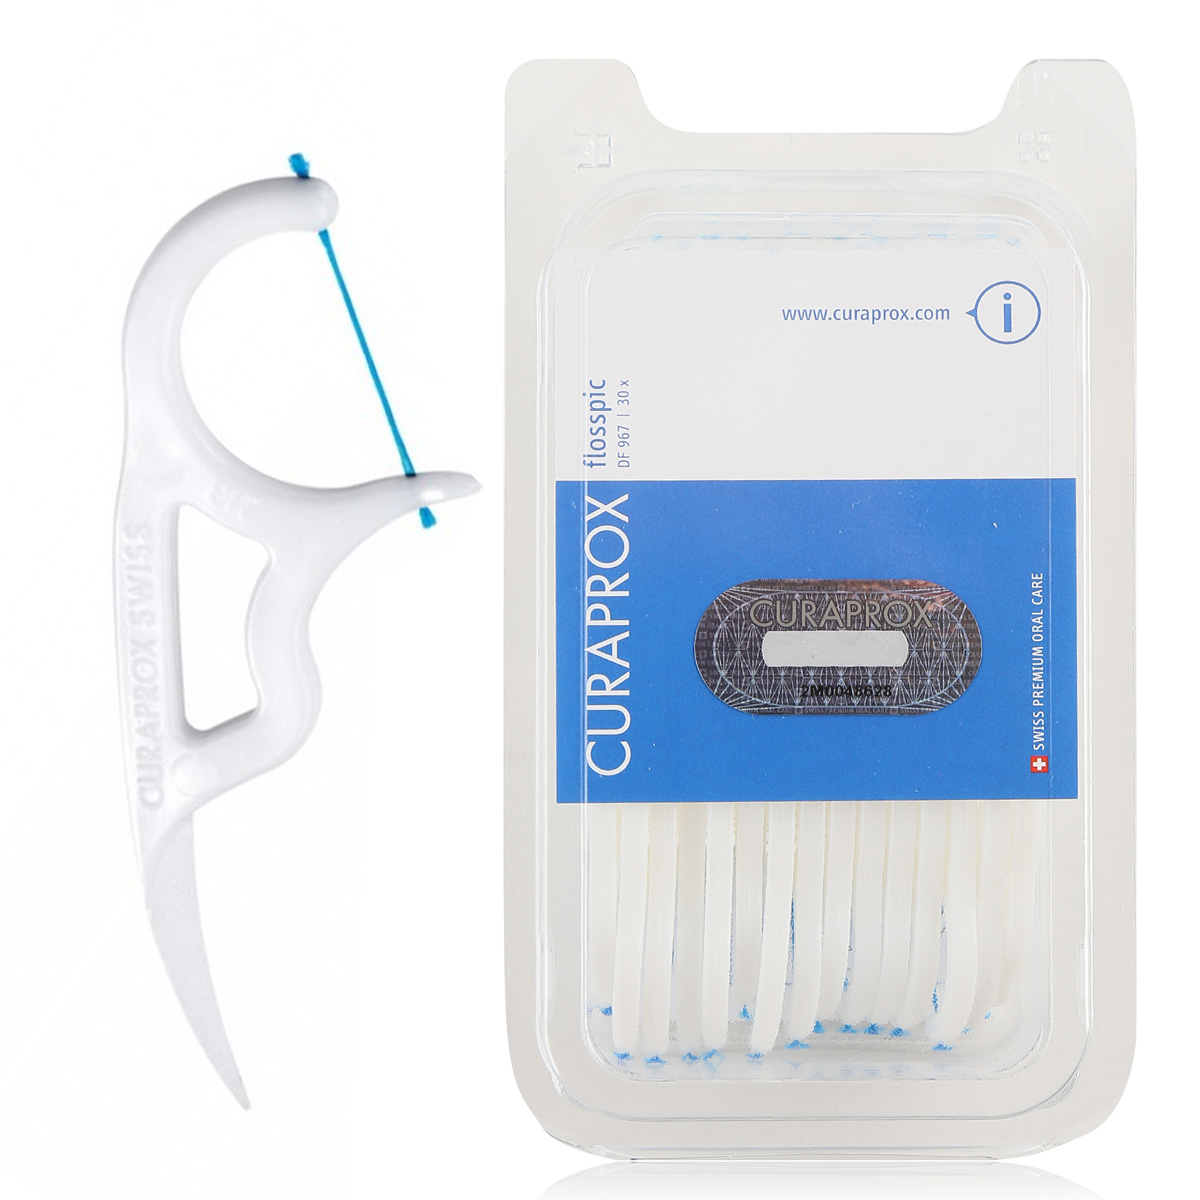 Зубная нить Curaprox DF 967 с пластиковым держателем Flosspic curaprox набор зубная нить с держателем 30 штук 2 штуки curaprox зубные нити